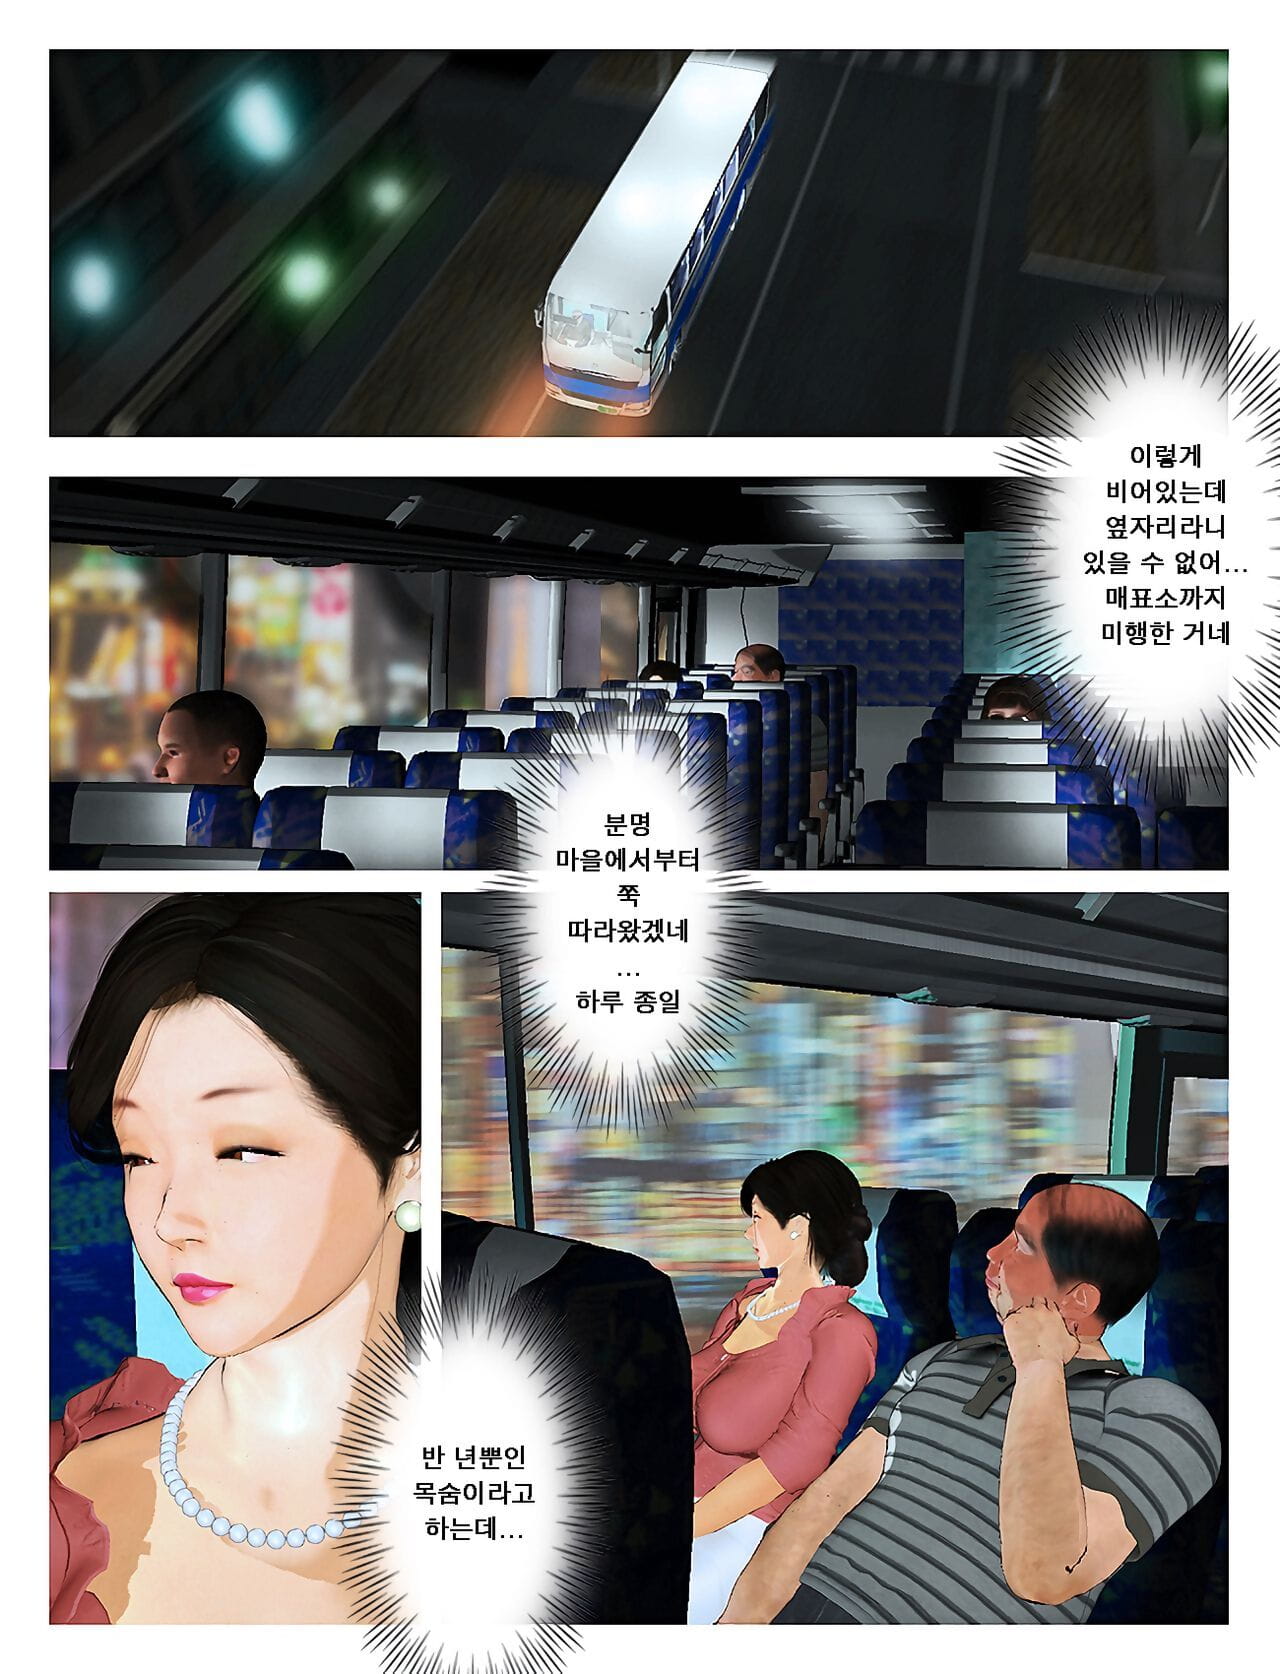 Kyou no Misako-san 2019:2 - 오늘의 미사코씨 2019:2 page 1